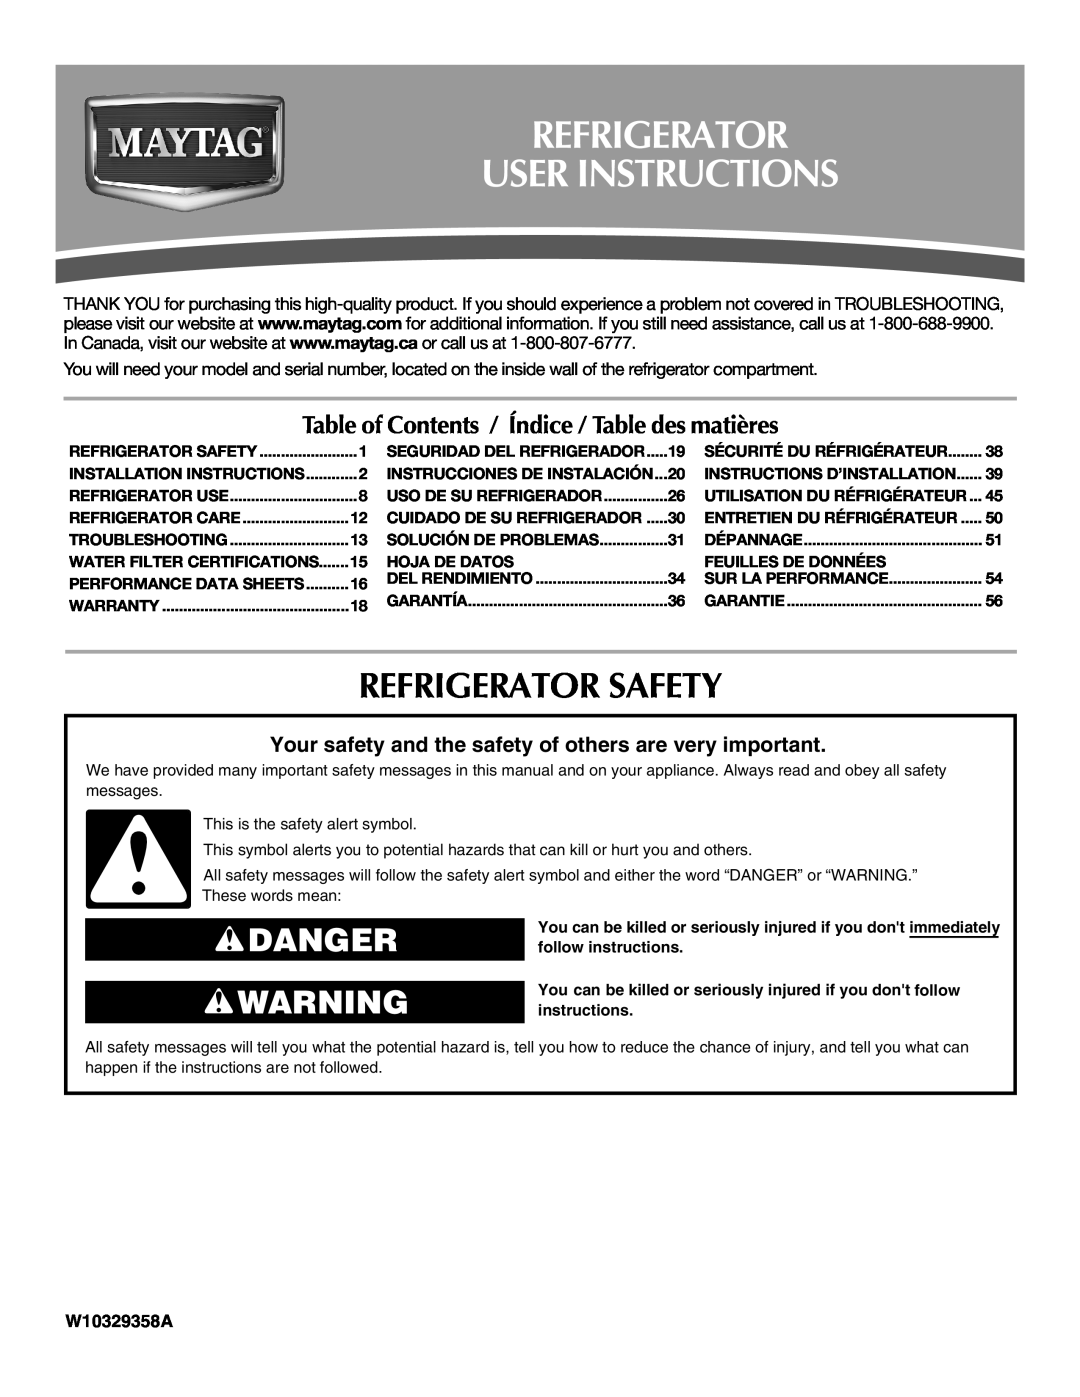 Maytag MFI2269VEM installation instructions Refrigerator User Instructions, Refrigerator Safety, Danger, W10329358A 